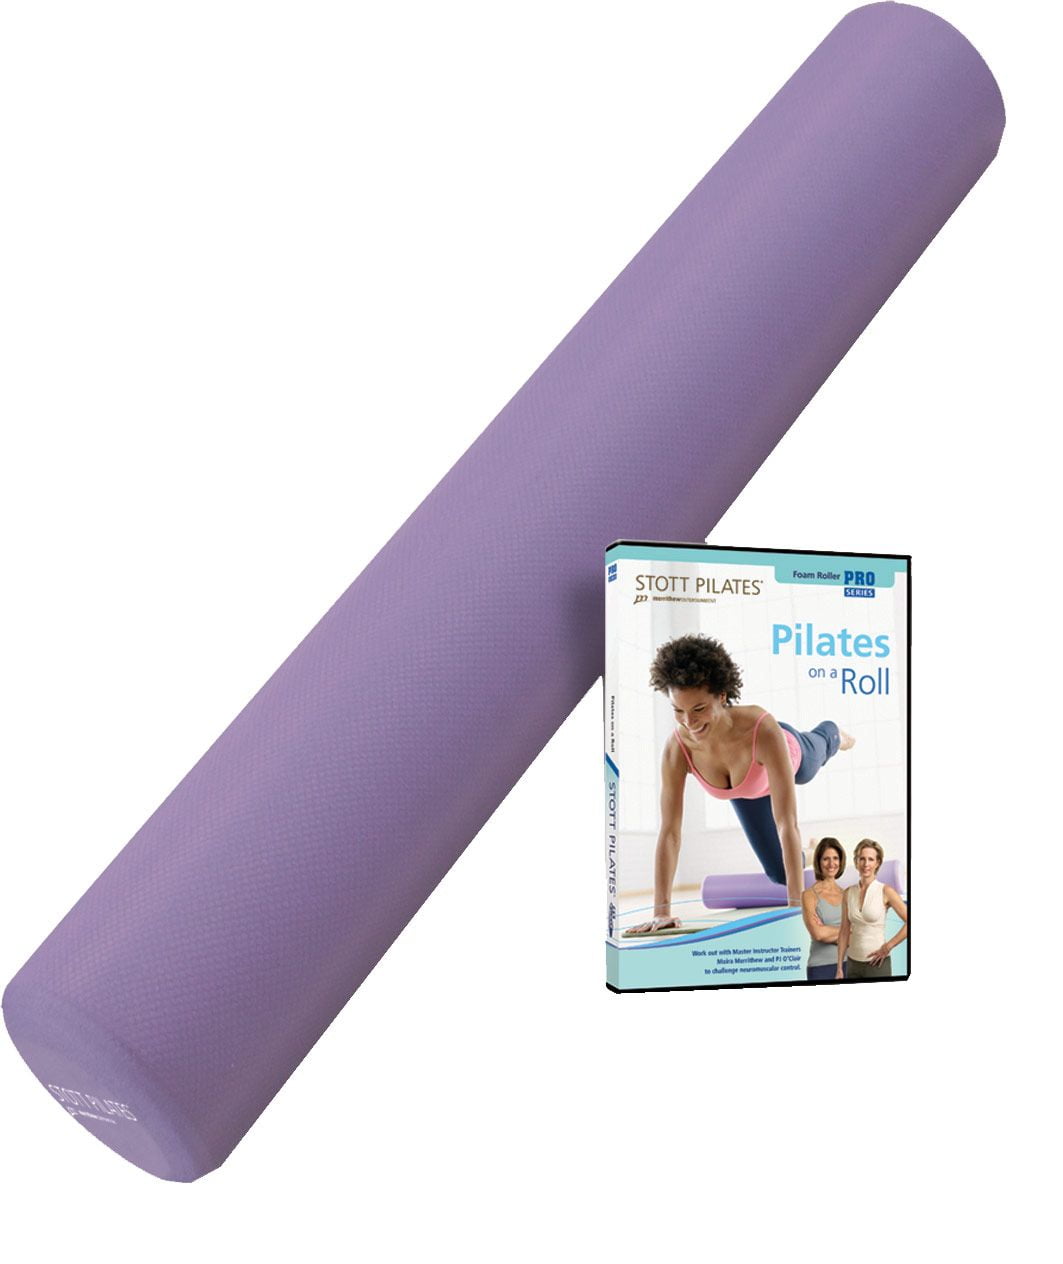 STOTT PILATES Foam Roller with Pilates DVD - Walmart.com - Walmart.com